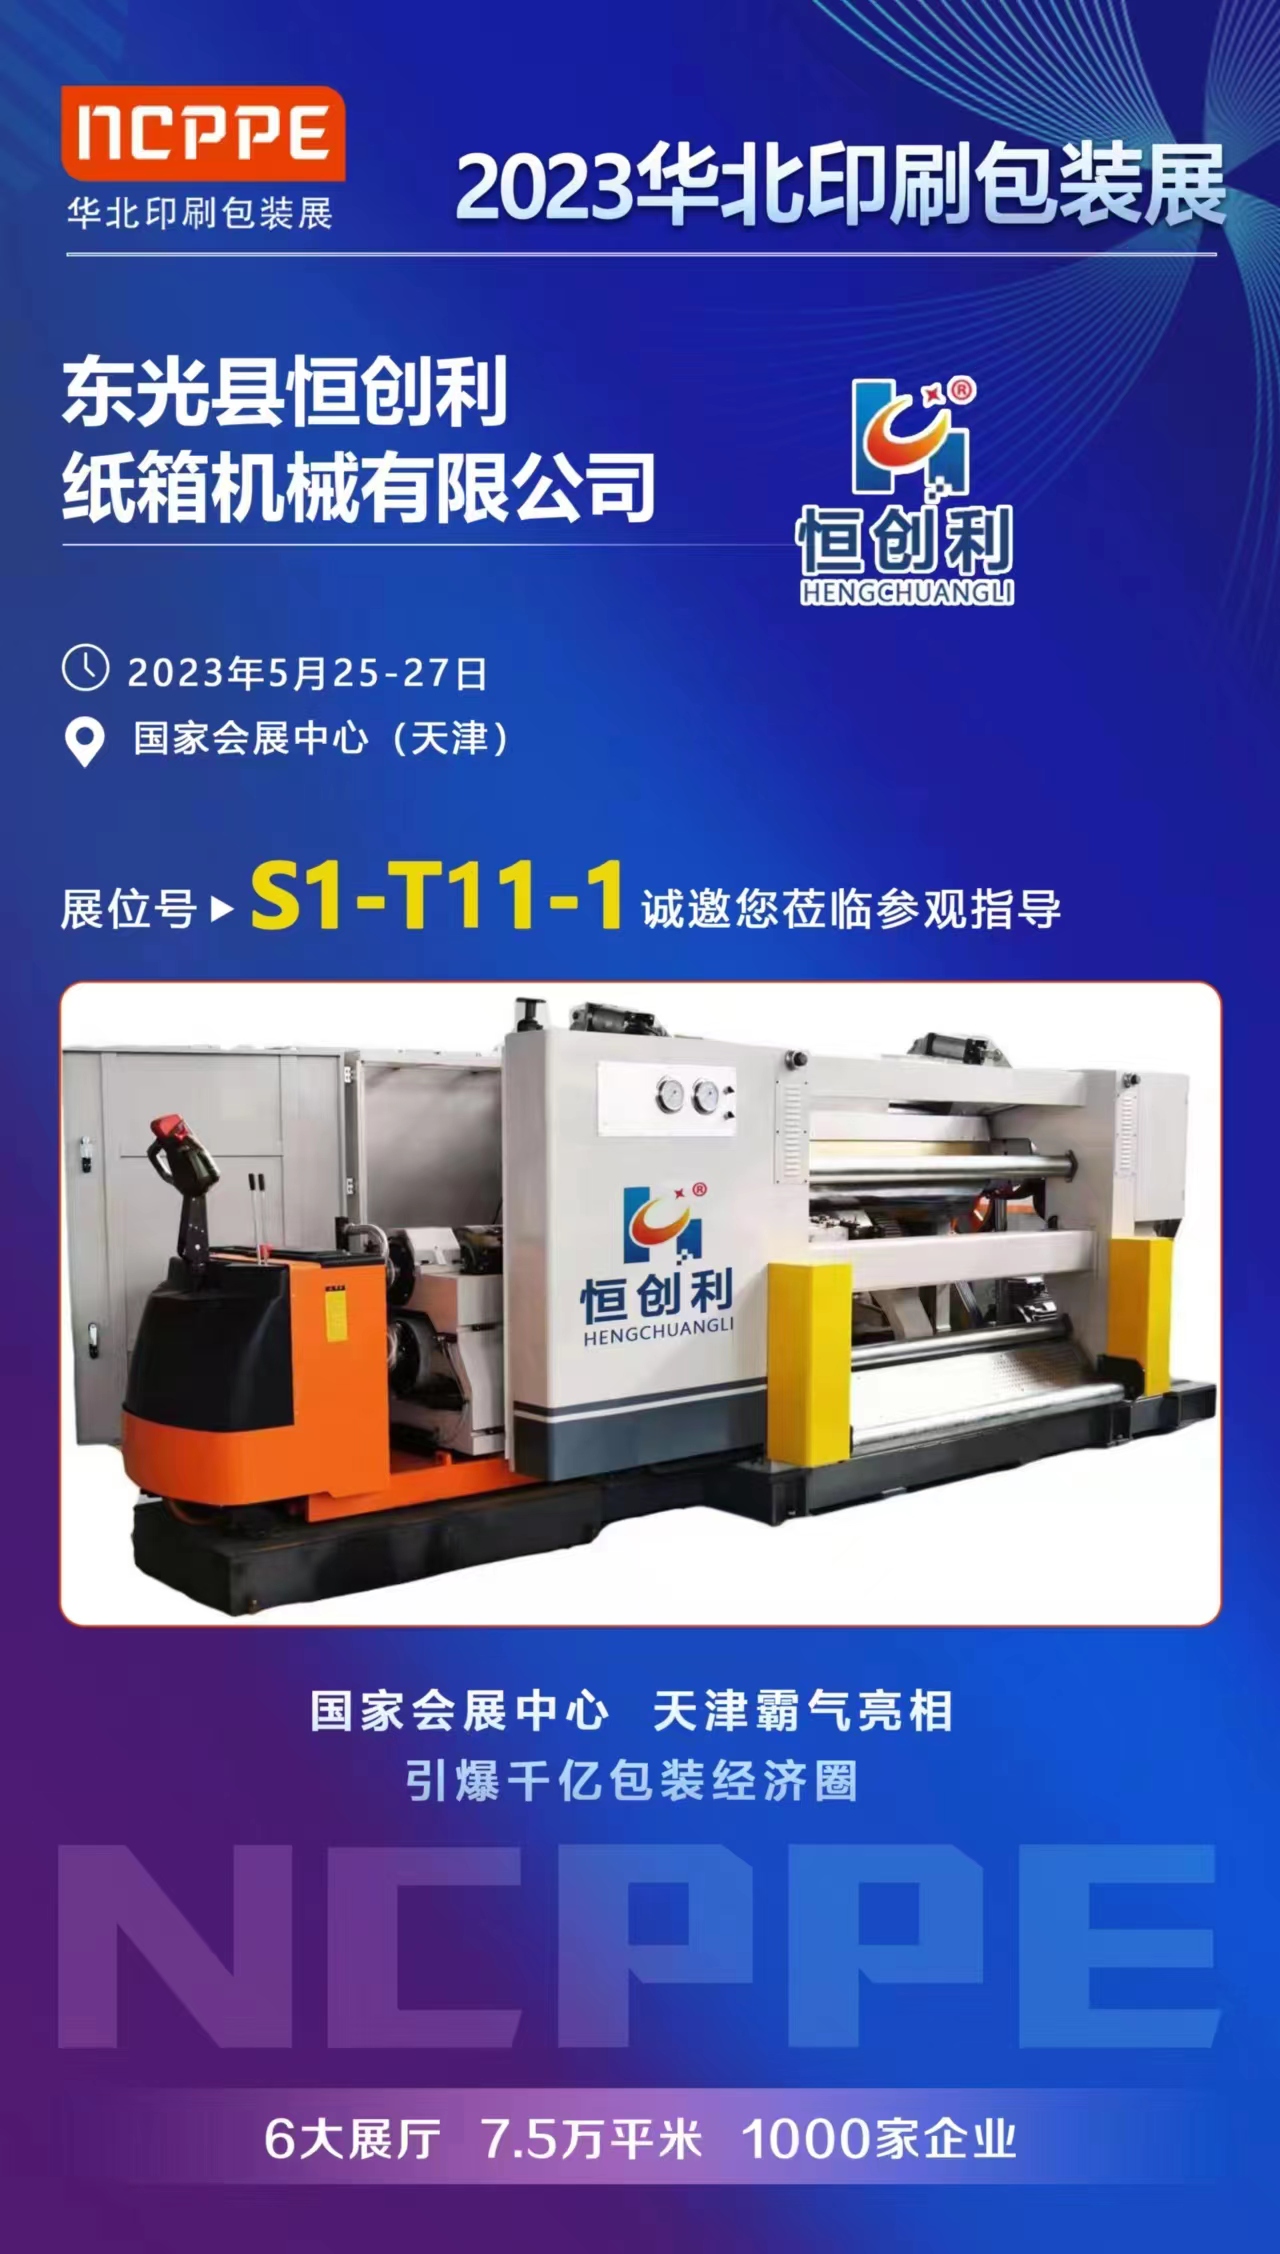 Gratam Dongguang Hengchuangli Carton Machinery Co., LTD